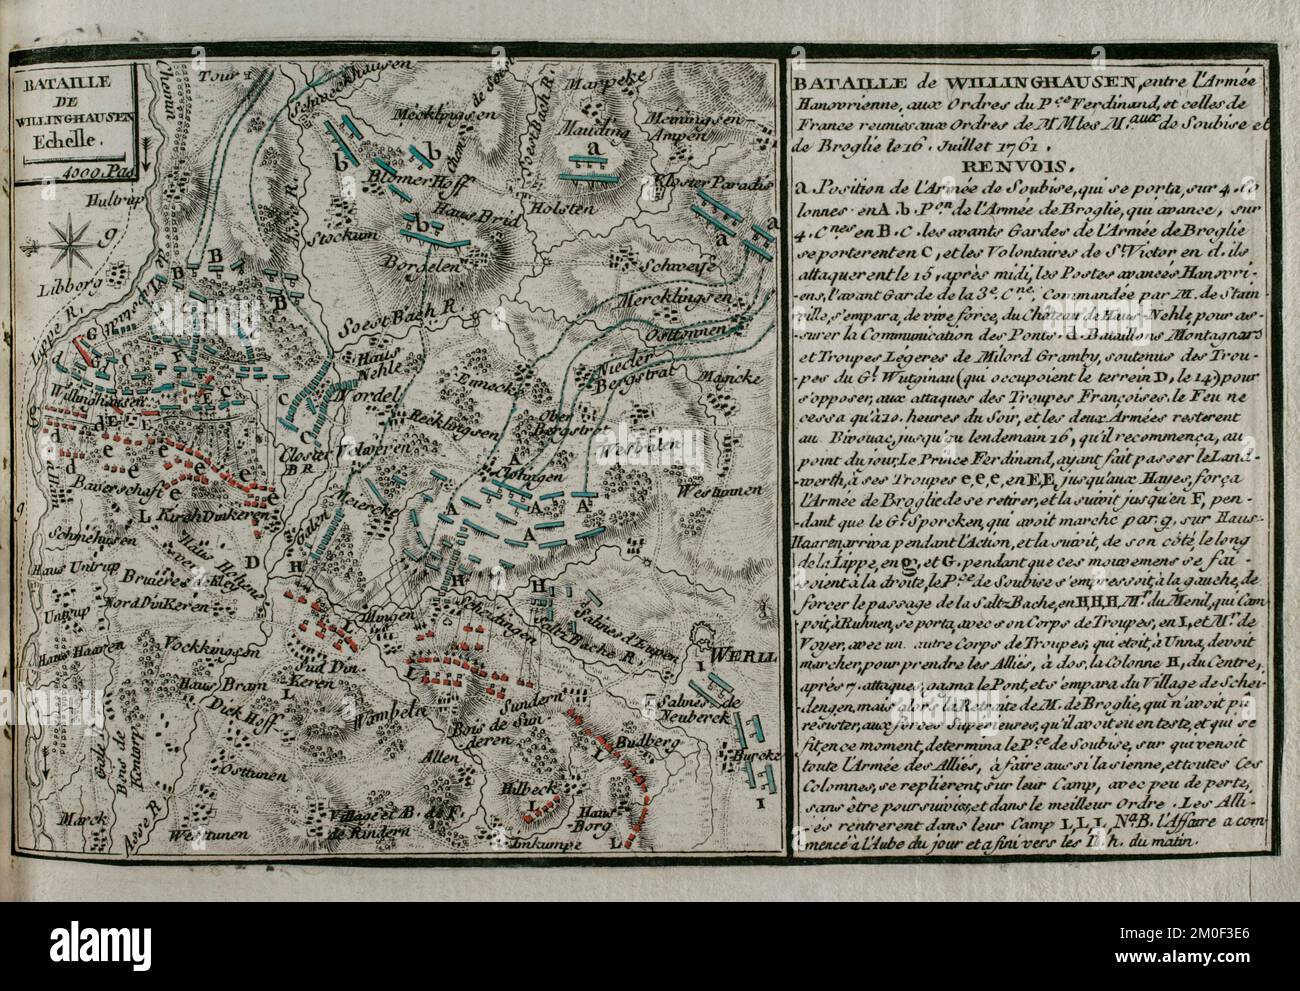 Guerra dei sette anni (1756-1763). Mappa della Battaglia di Vellinghausen (15-16 luglio 1761). Si è giocato sulle rive del fiume Lippe nella Germania nord-occidentale. Si confrontò con l'esercito alleato prussiano-anoveriano-britannico guidato dal principe Ferdinando di Brunswick contro l'esercito francese sotto il comando del duca di Broglie e del principe Soubise. La forza francese ha dovuto ritirarsi. Pubblicato nel 1765 dal cartografo Jean de Beaurain (1696-1771) come illustrazione della sua Grande carta della Germania, con gli eventi che si sono verificati durante la Guerra dei sette anni. Esercito alleato in rosso e esercito francese in blu. Incisione e. Foto Stock